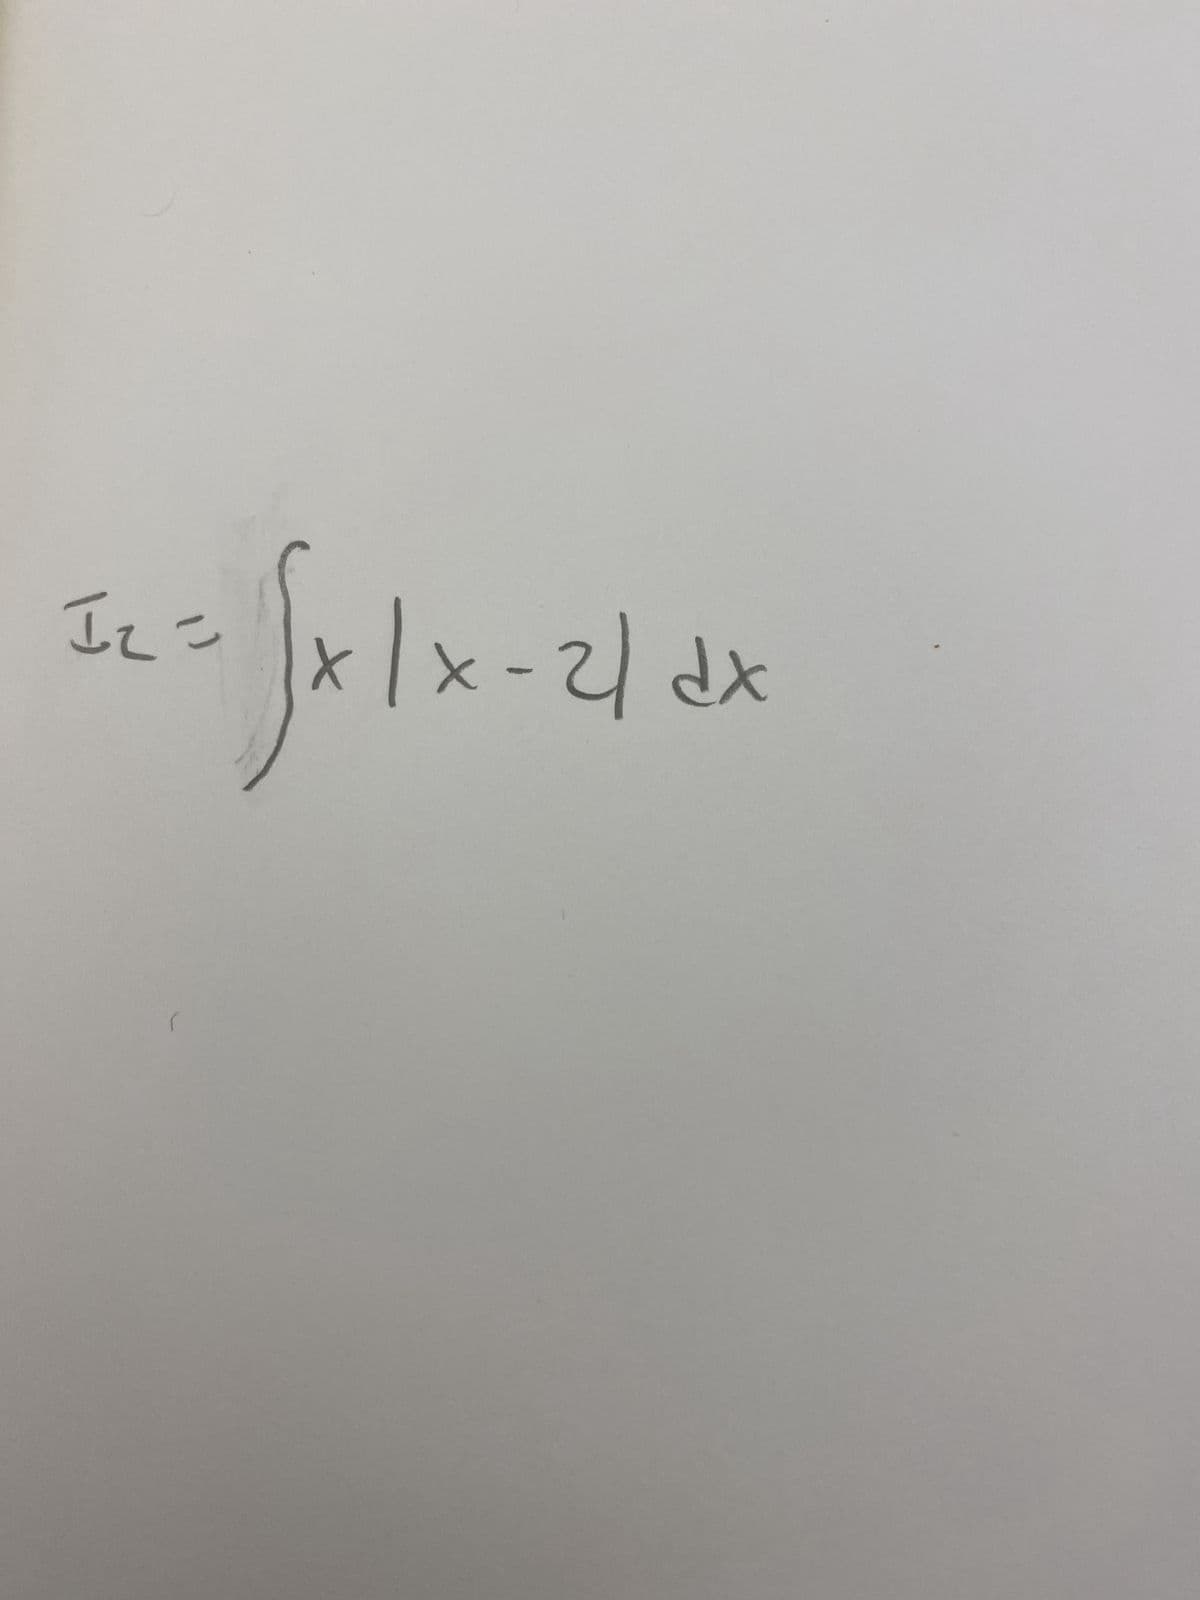 I₂ =
|x-2/dx